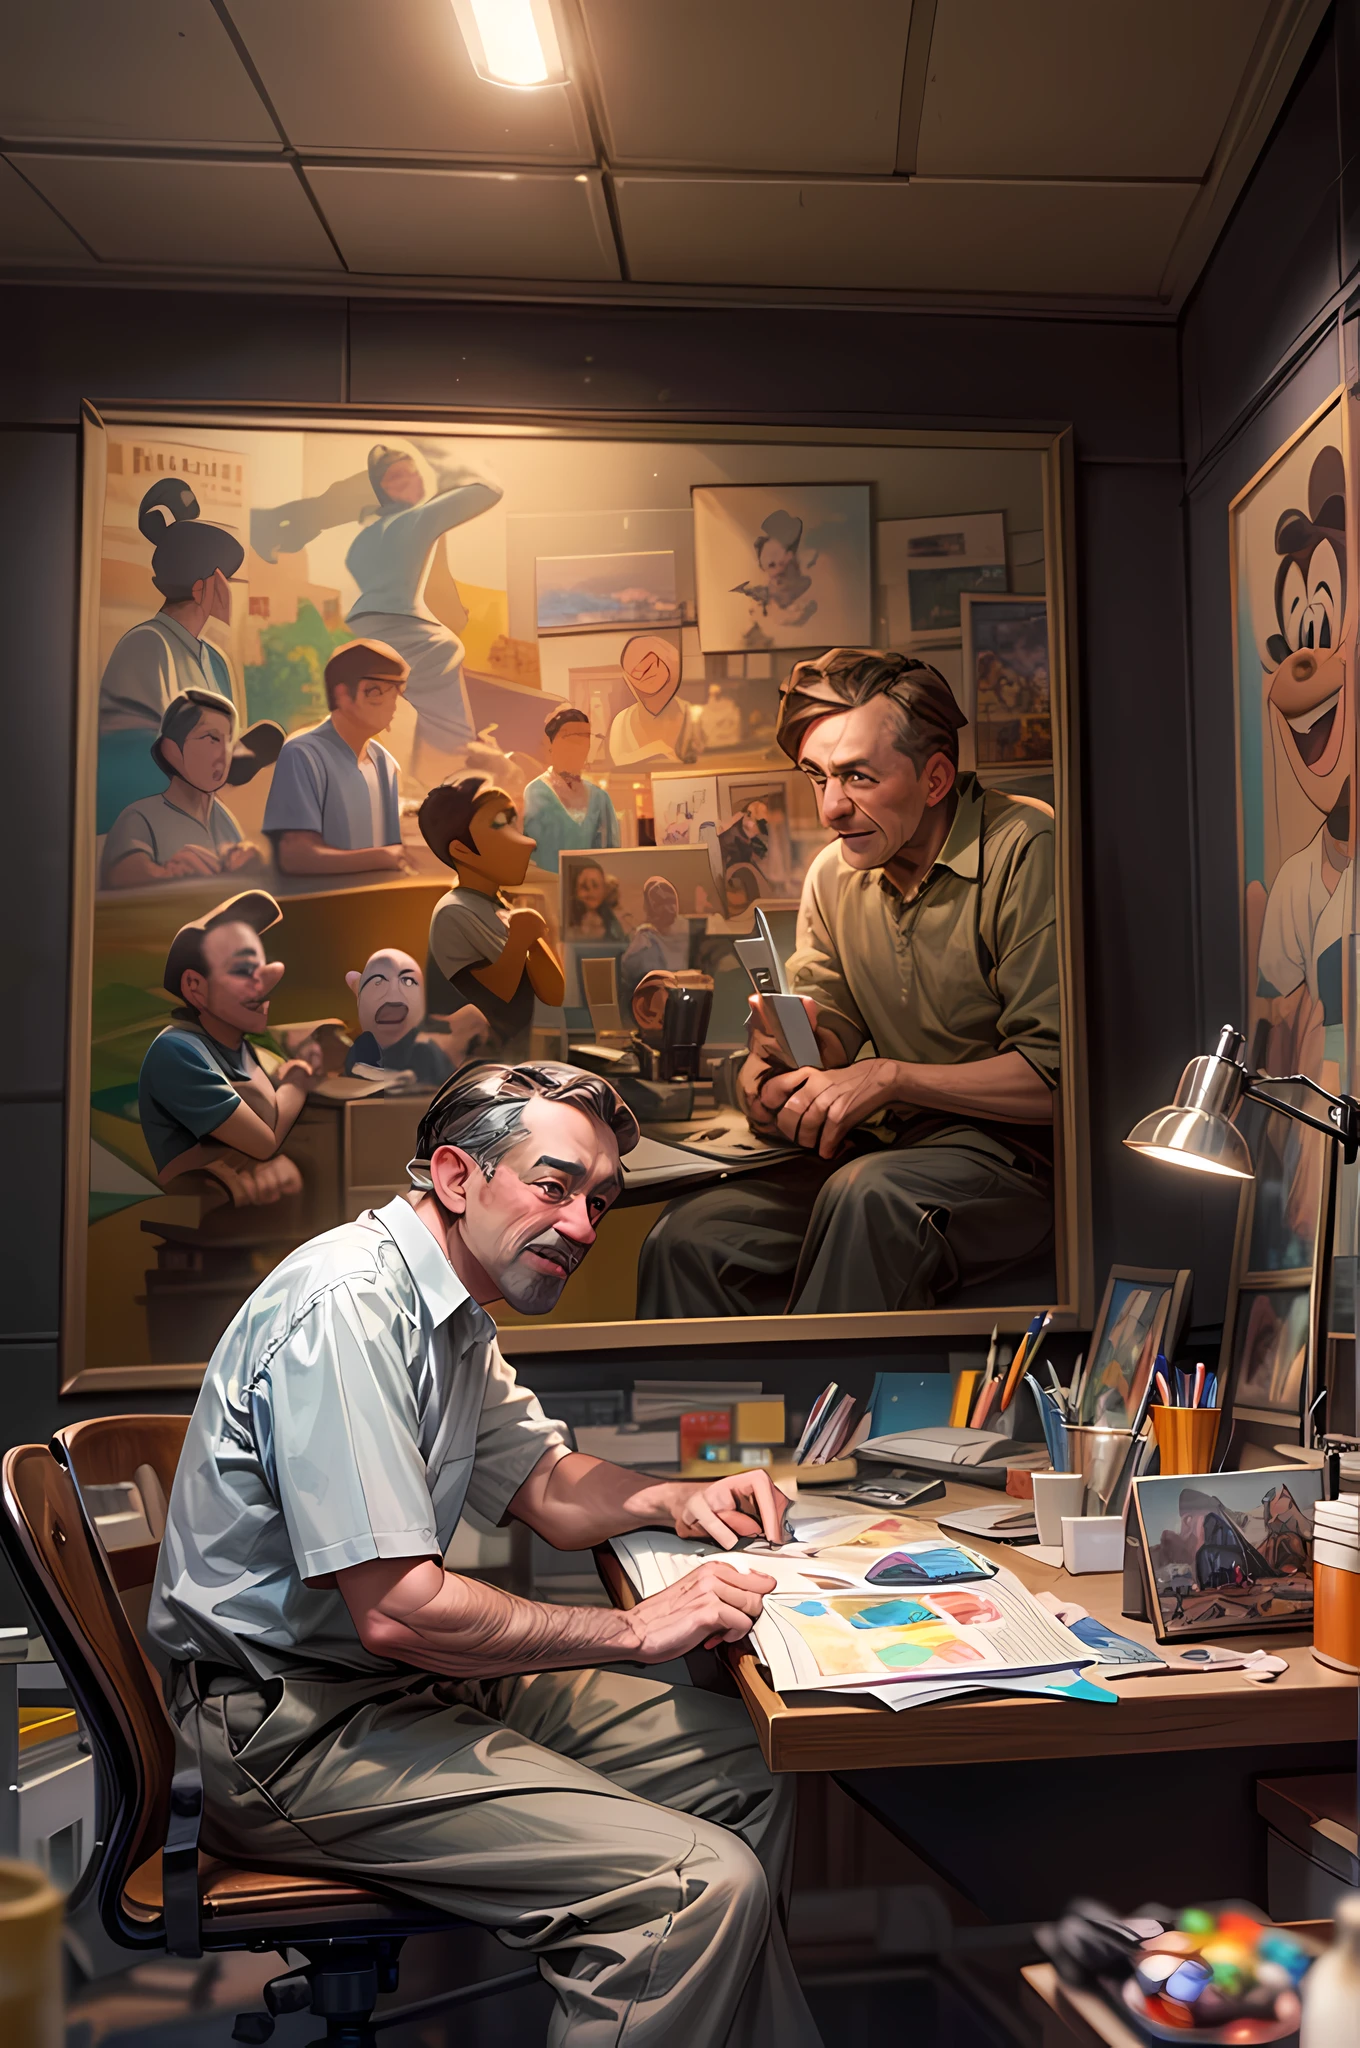 ein Porträt von (Walt Disney: 1.3), sitzt in seinem Arbeitszimmer und arbeitet an seinem nächsten Projekt, fluoreszierendes Licht, berühmte Disney-Figuren an den Wänden gemalt,  animationsstudienzimmerhintergrund, Extrem detailliert, Meisterwerk, beste Qualität, fotorealistisch, pixarstil